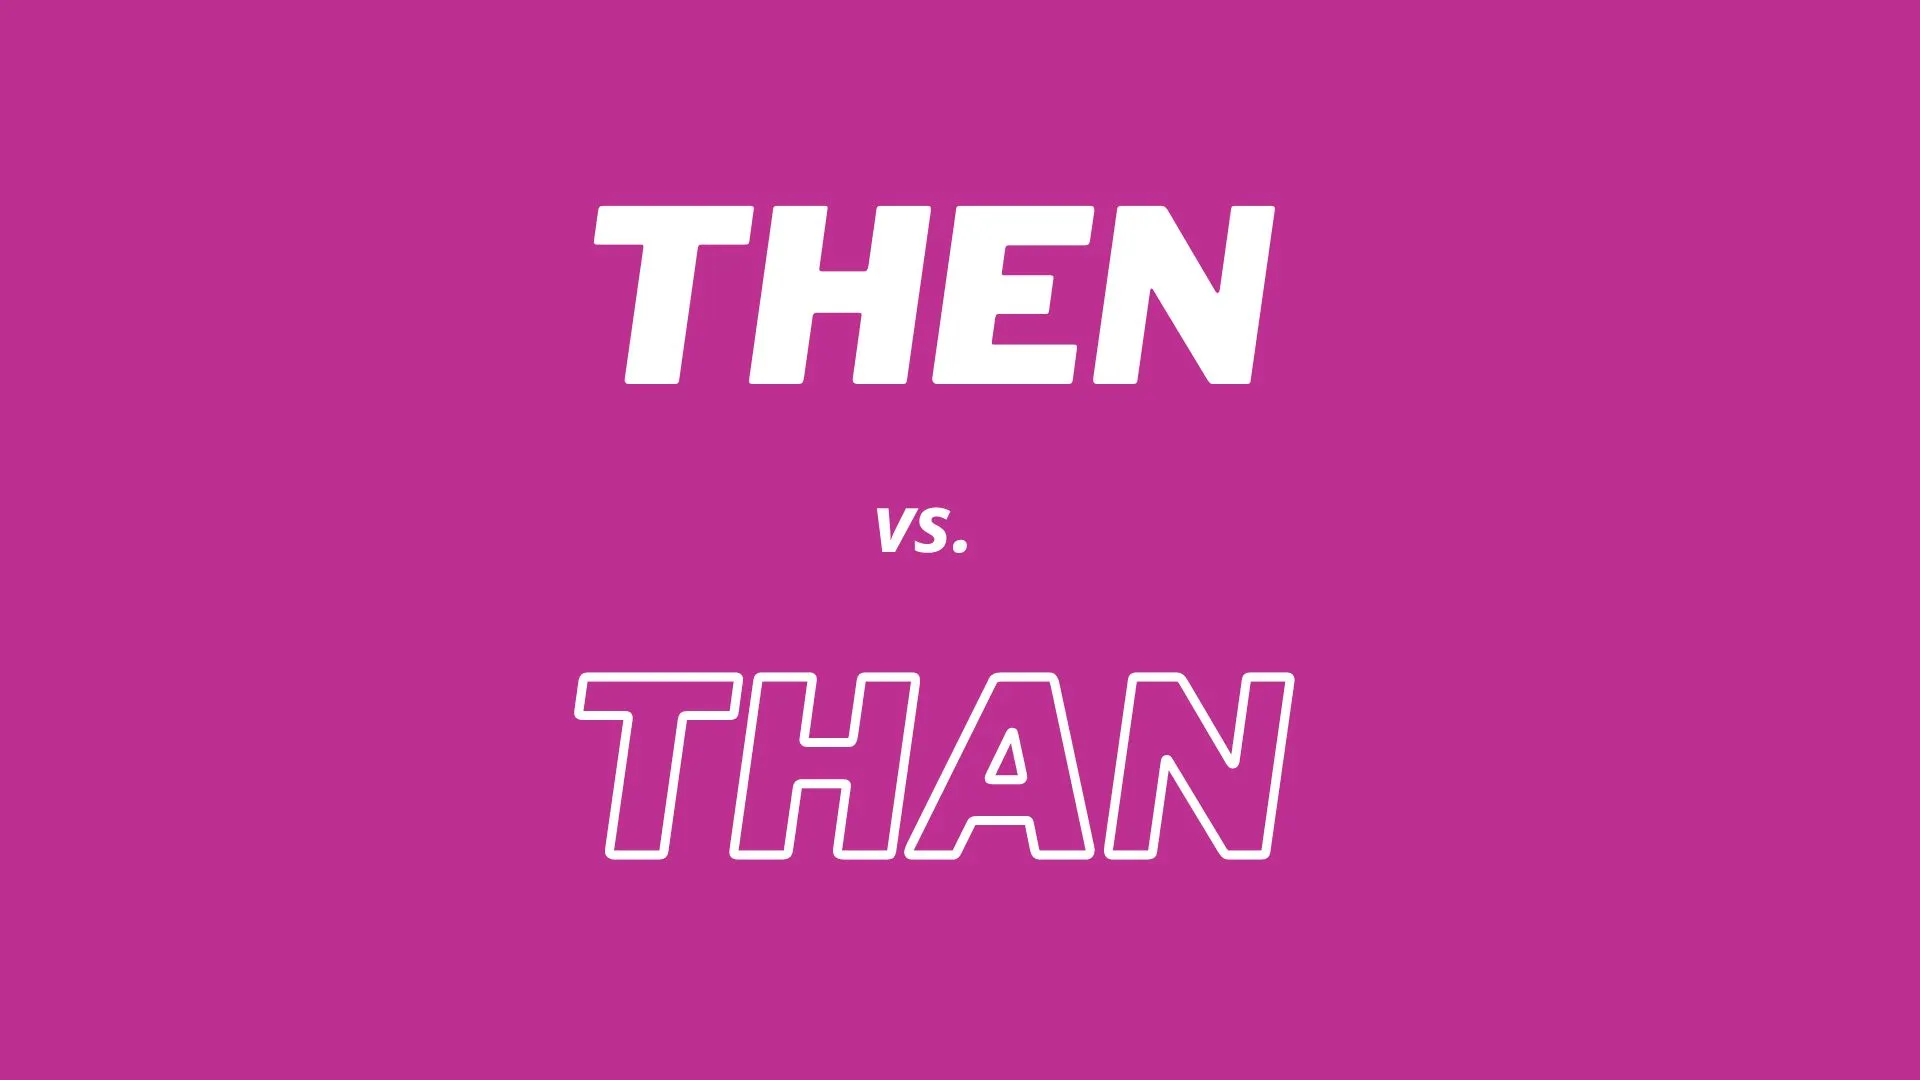 Comparação visual e definições das palavras "then" e "than".